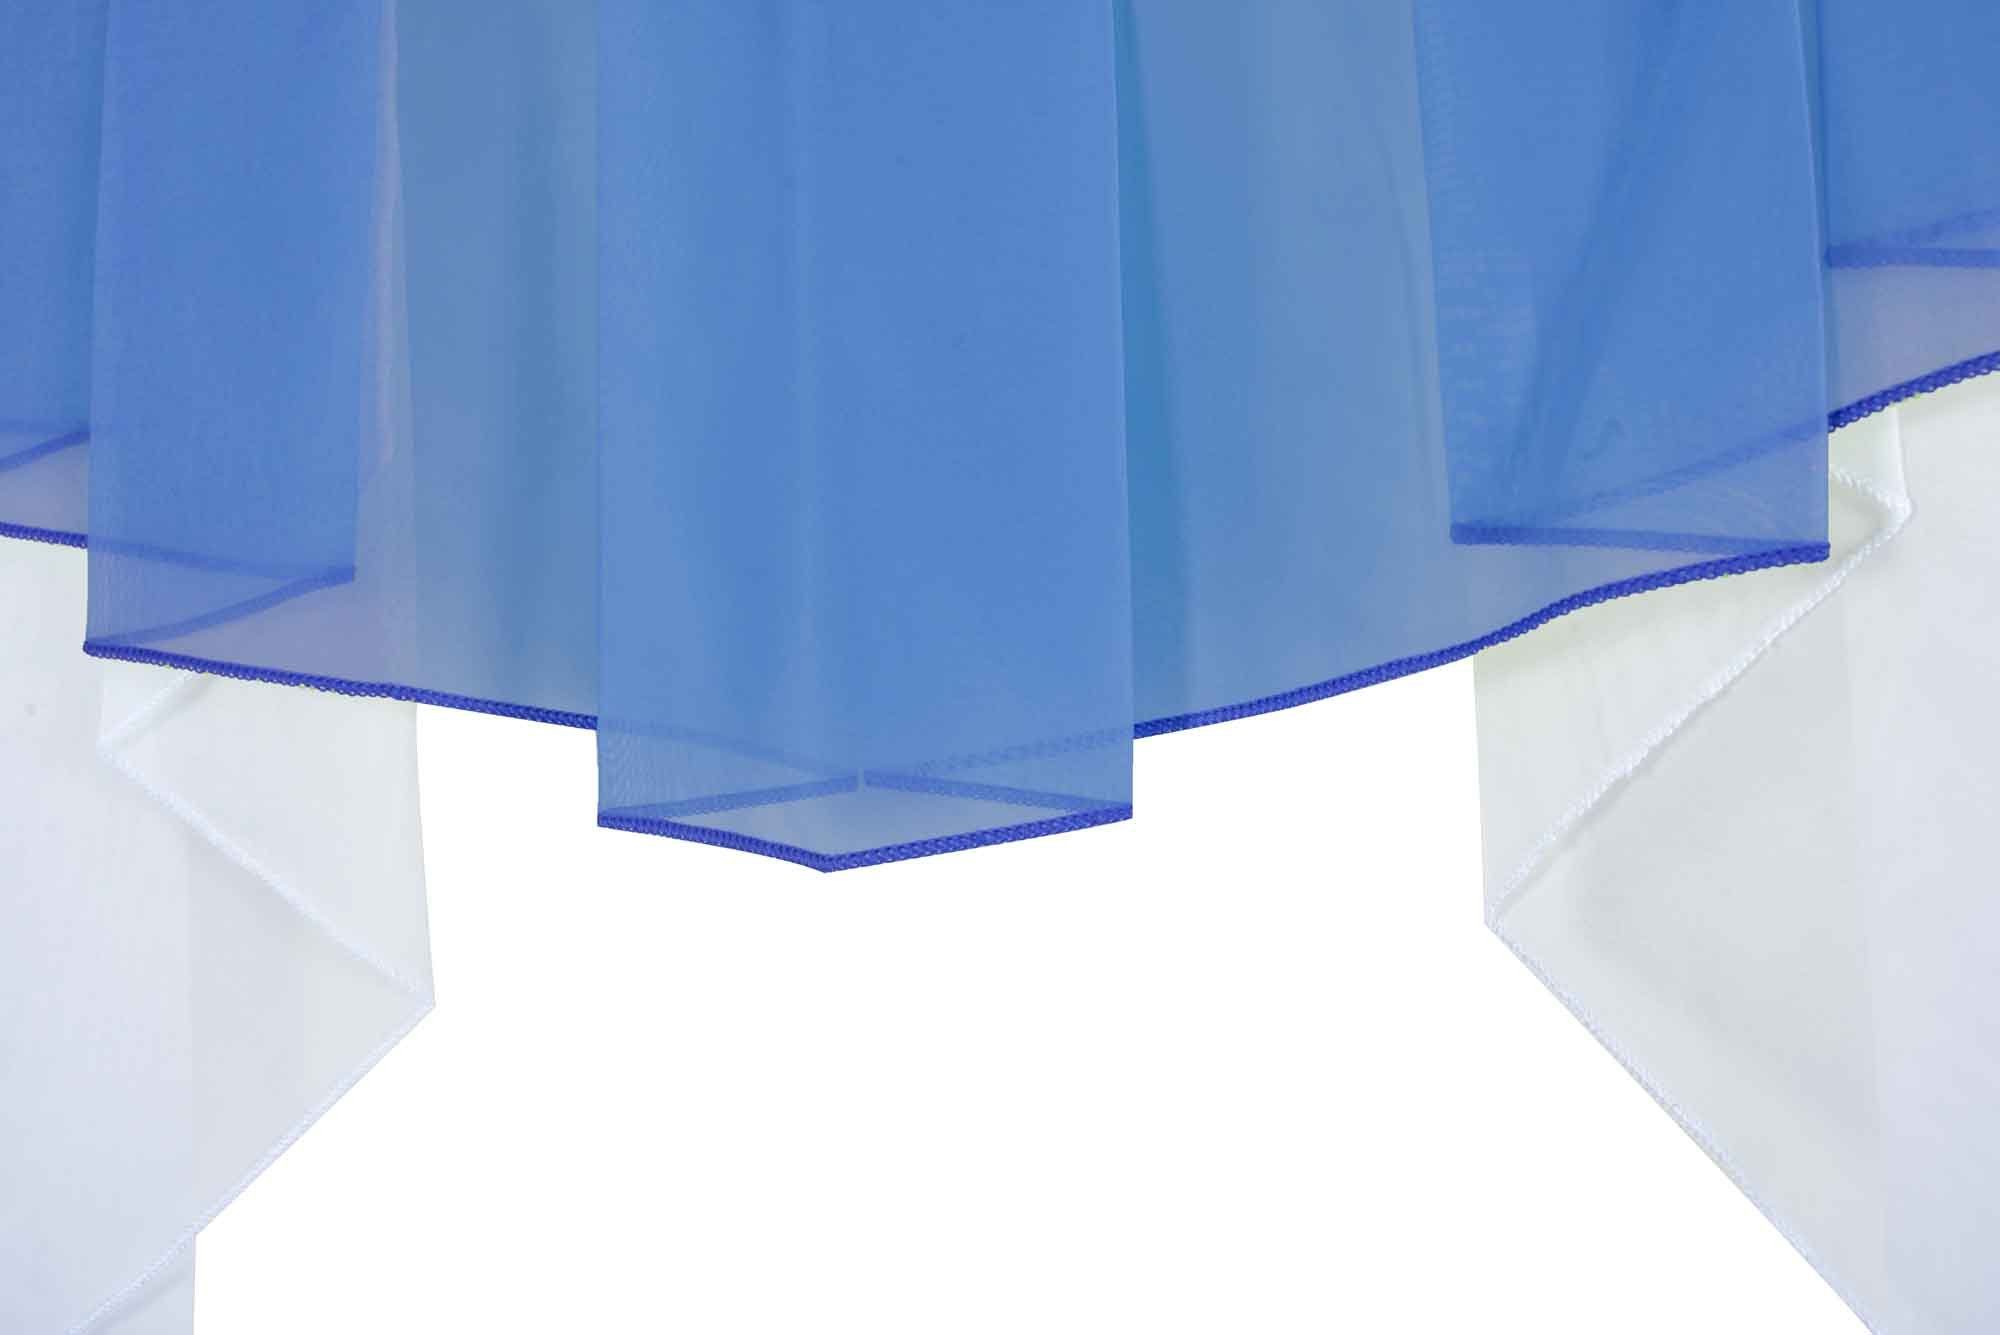 Stangendurchzug, Scheibengardine, transparent, Kurzgardine Voile, Gardinenbox, Universalband Blau M-Bogen